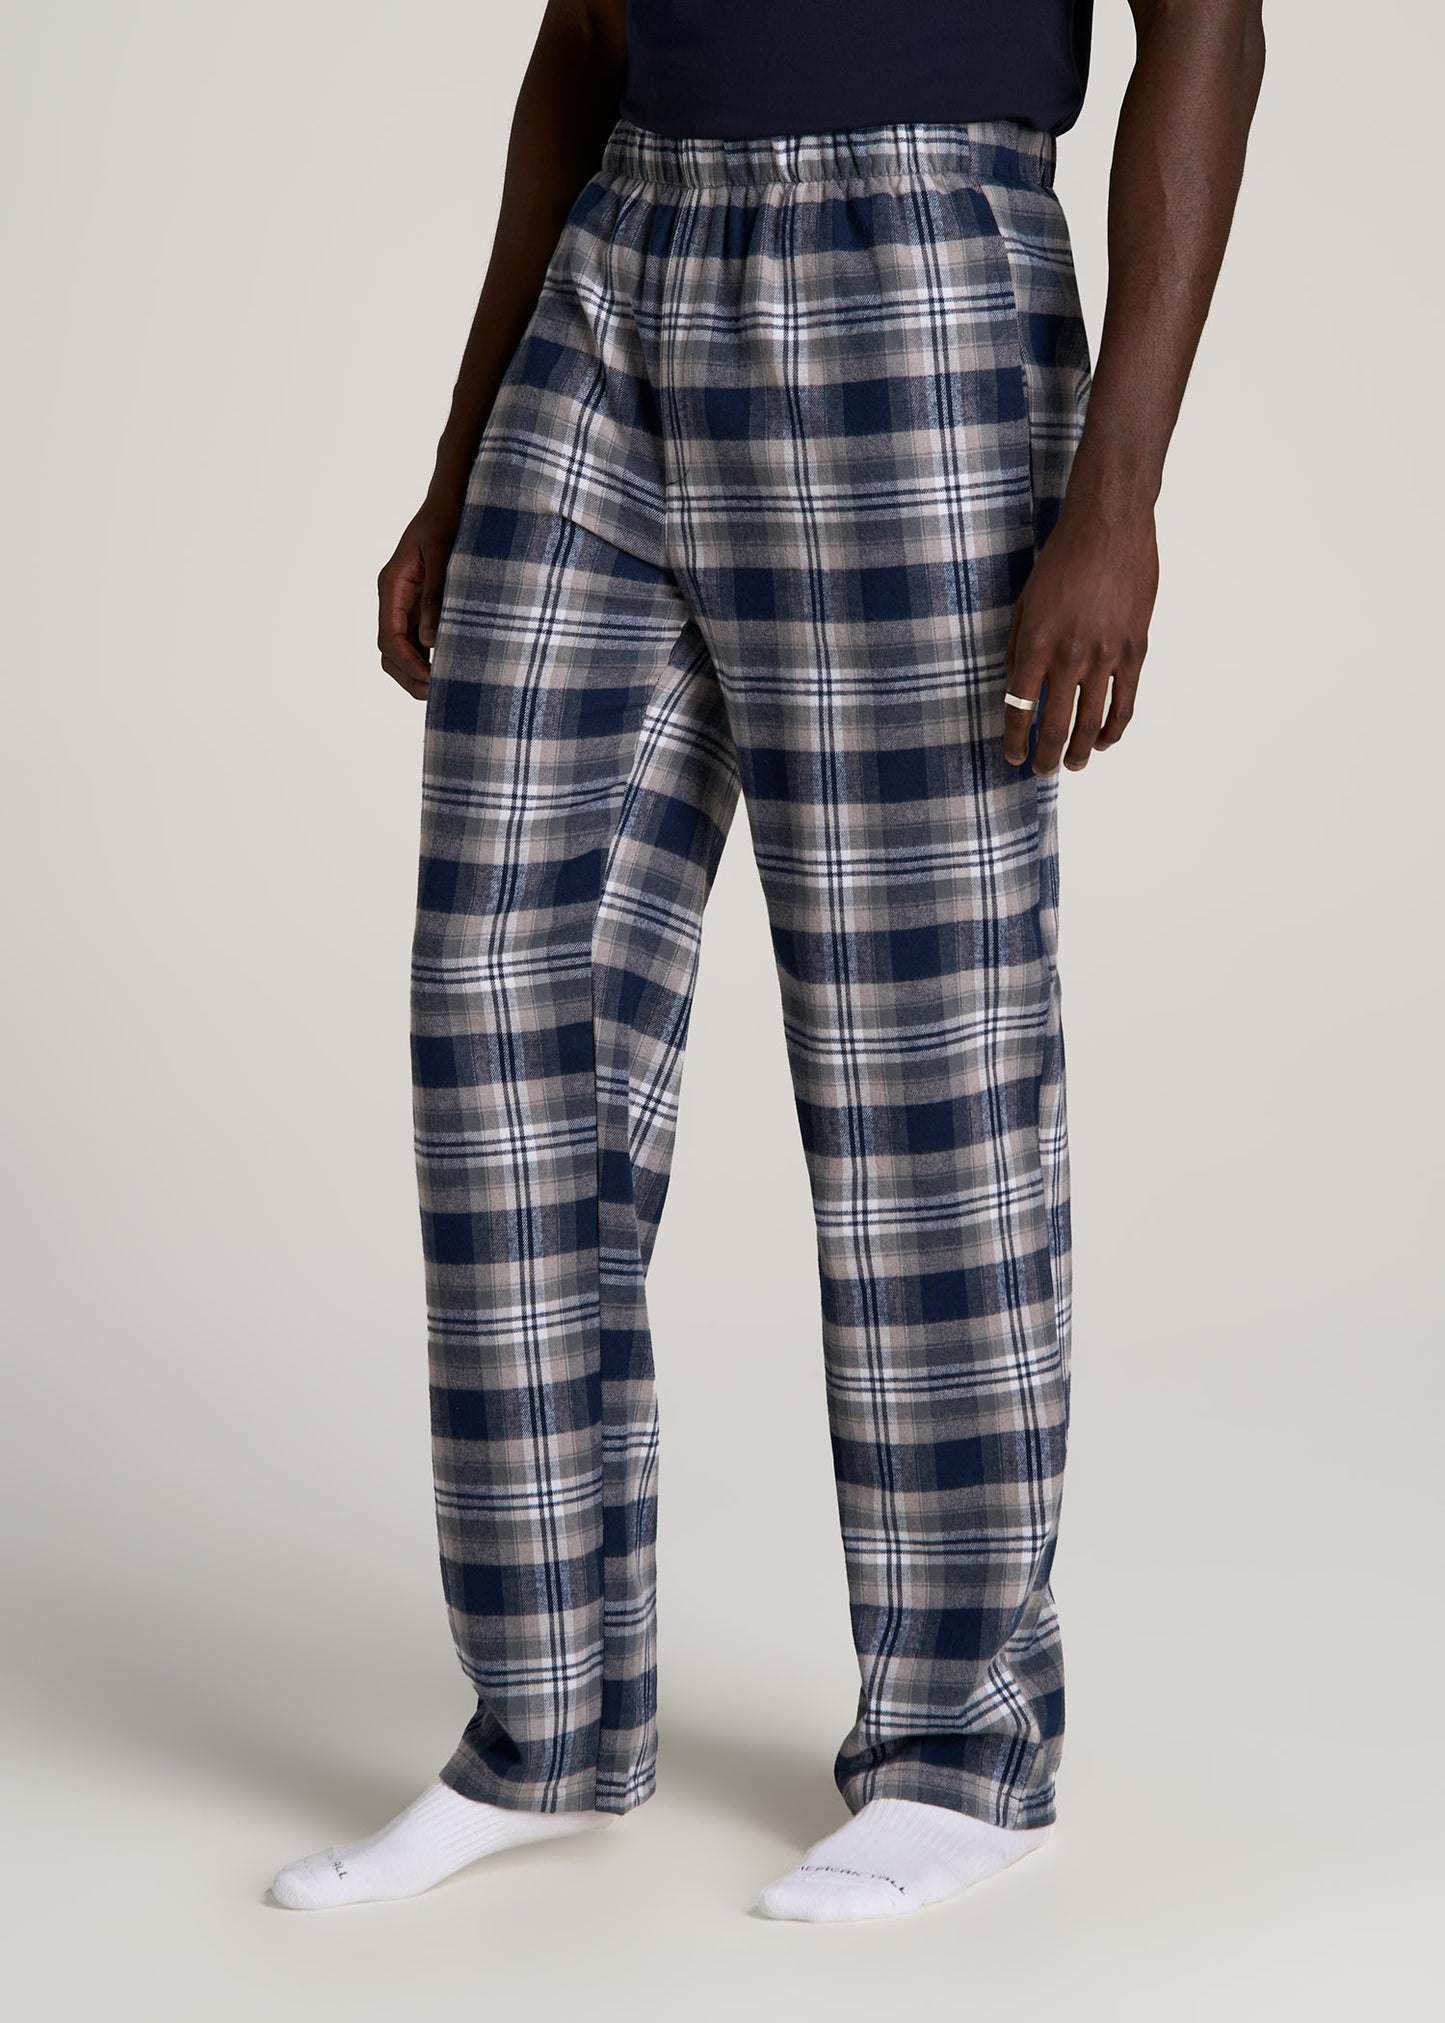 Pyjamas + Sleepwear For Tall Men, Tall Mens Pyjamas